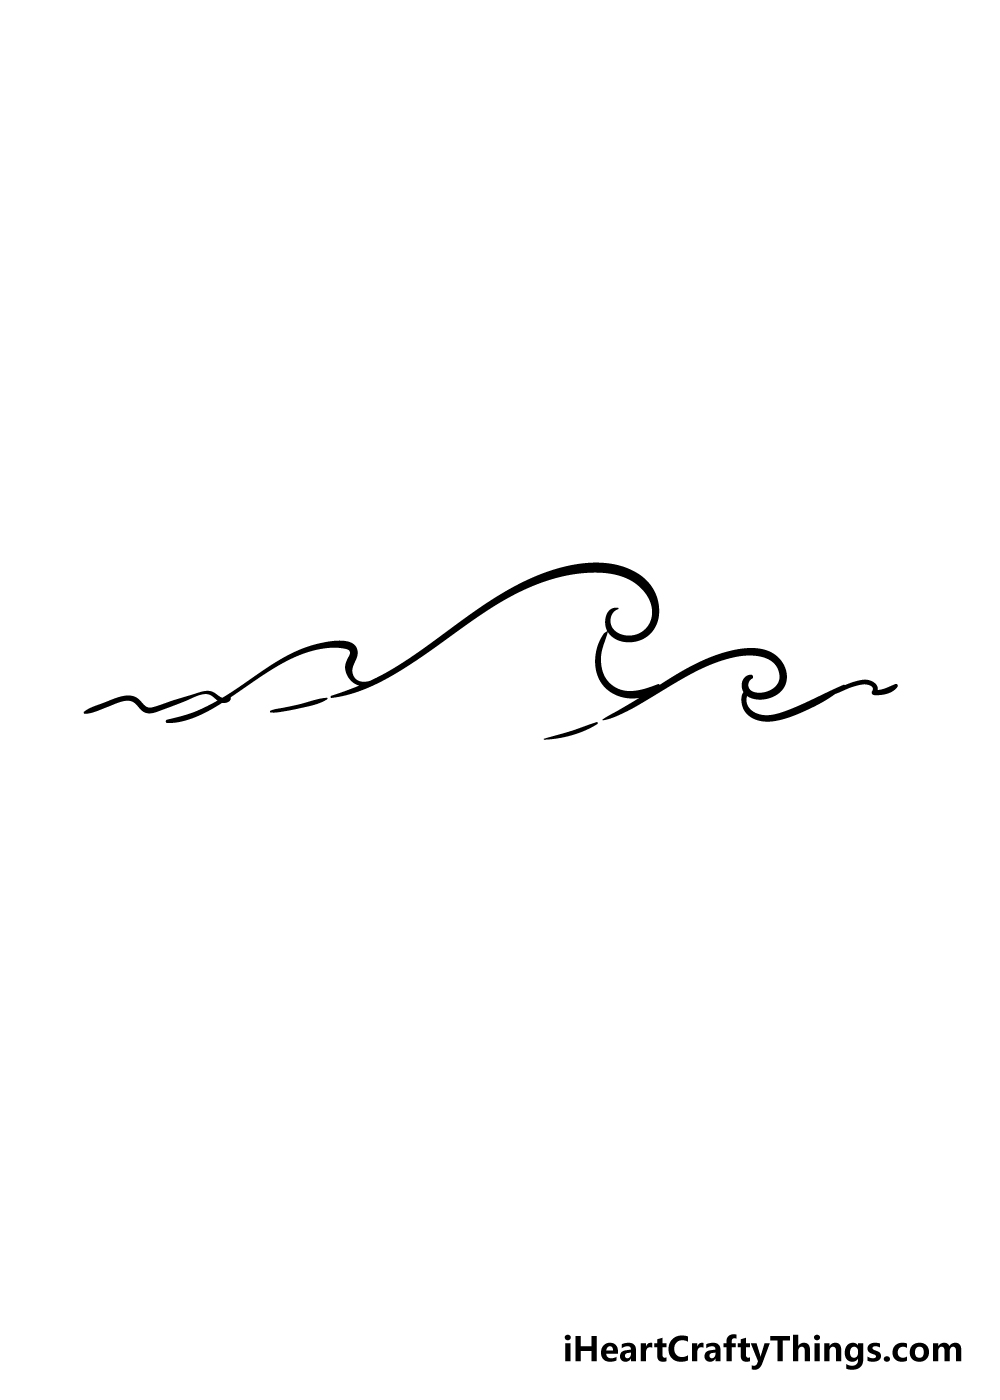 Waves 4 1 - Hướng dẫn chi tiết cách vẽ sóng biển đơn giản với 6 bước cơ bản